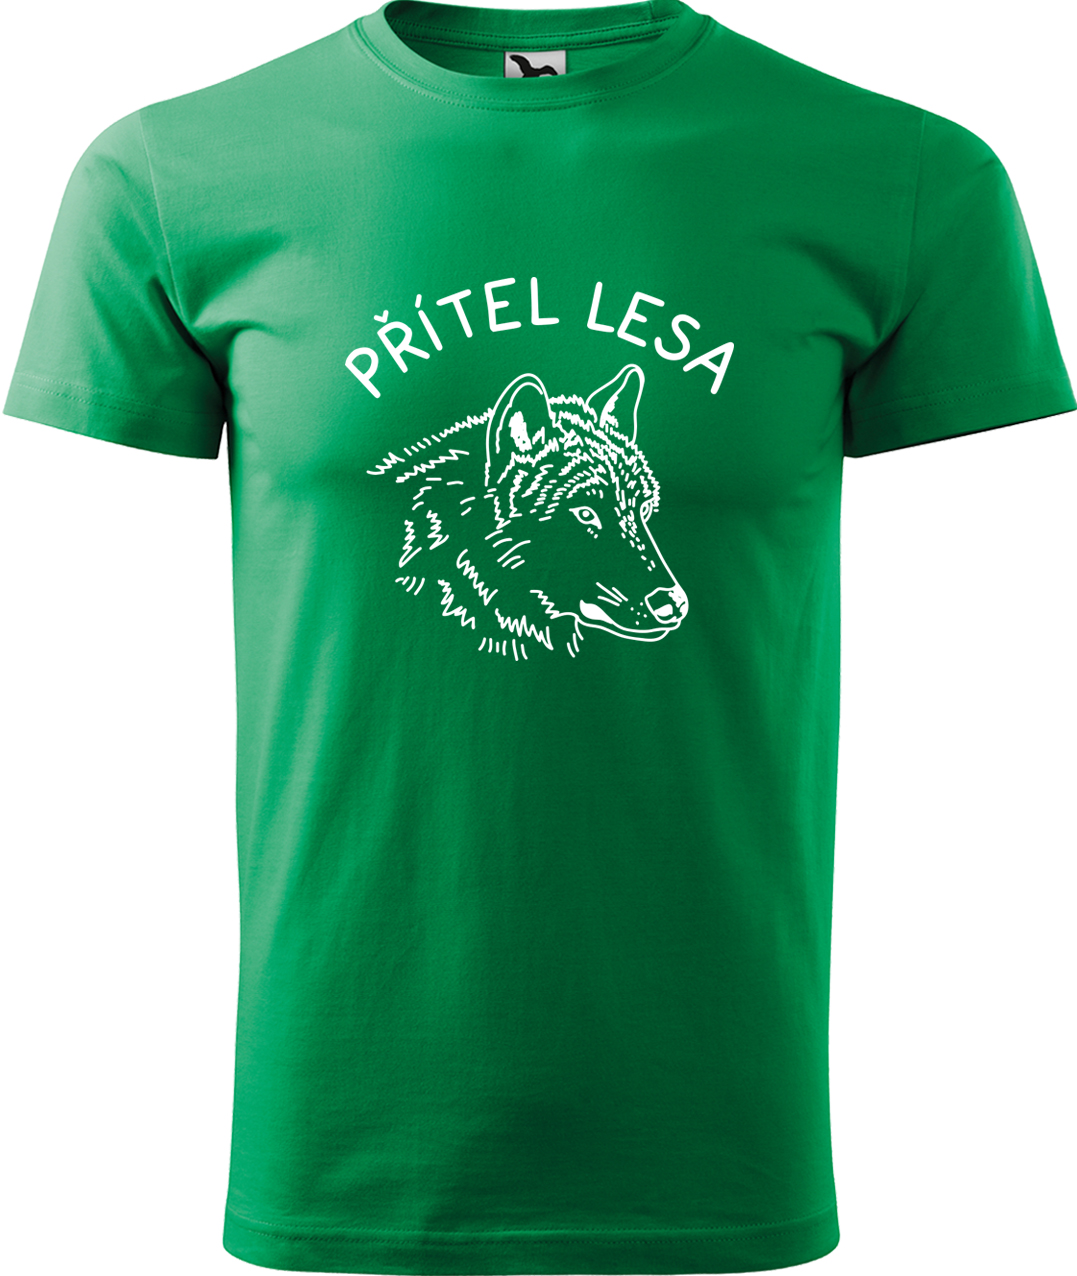 Pánské tričko s vlkem - Přítel lesa Velikost: 3XL, Barva: Středně zelená (16), Střih: pánský